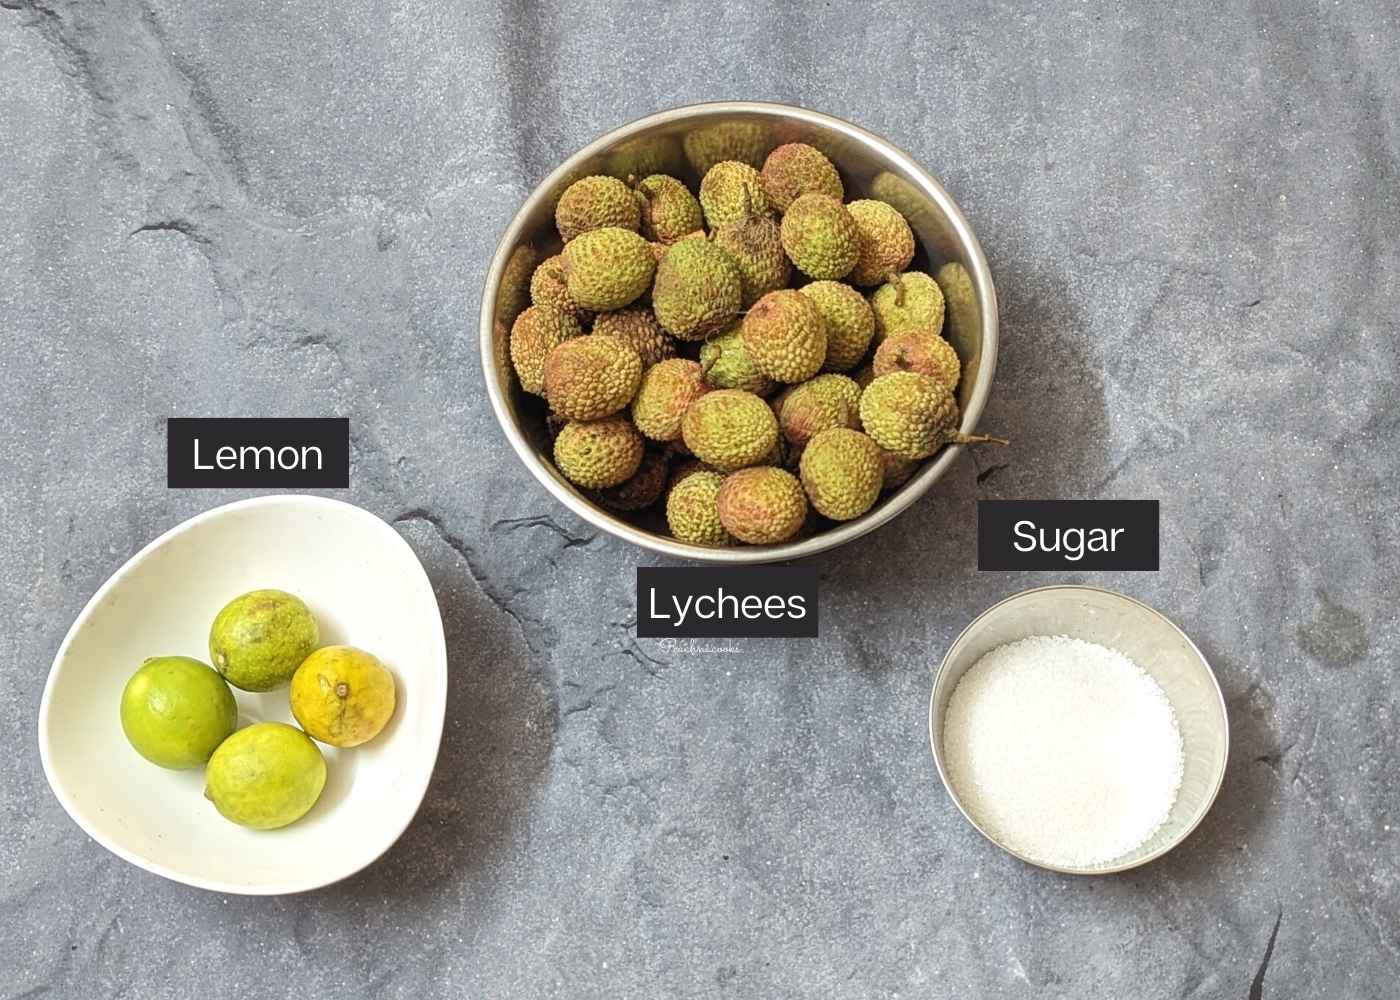 Whole lychees, lemon and sugar in bowls.